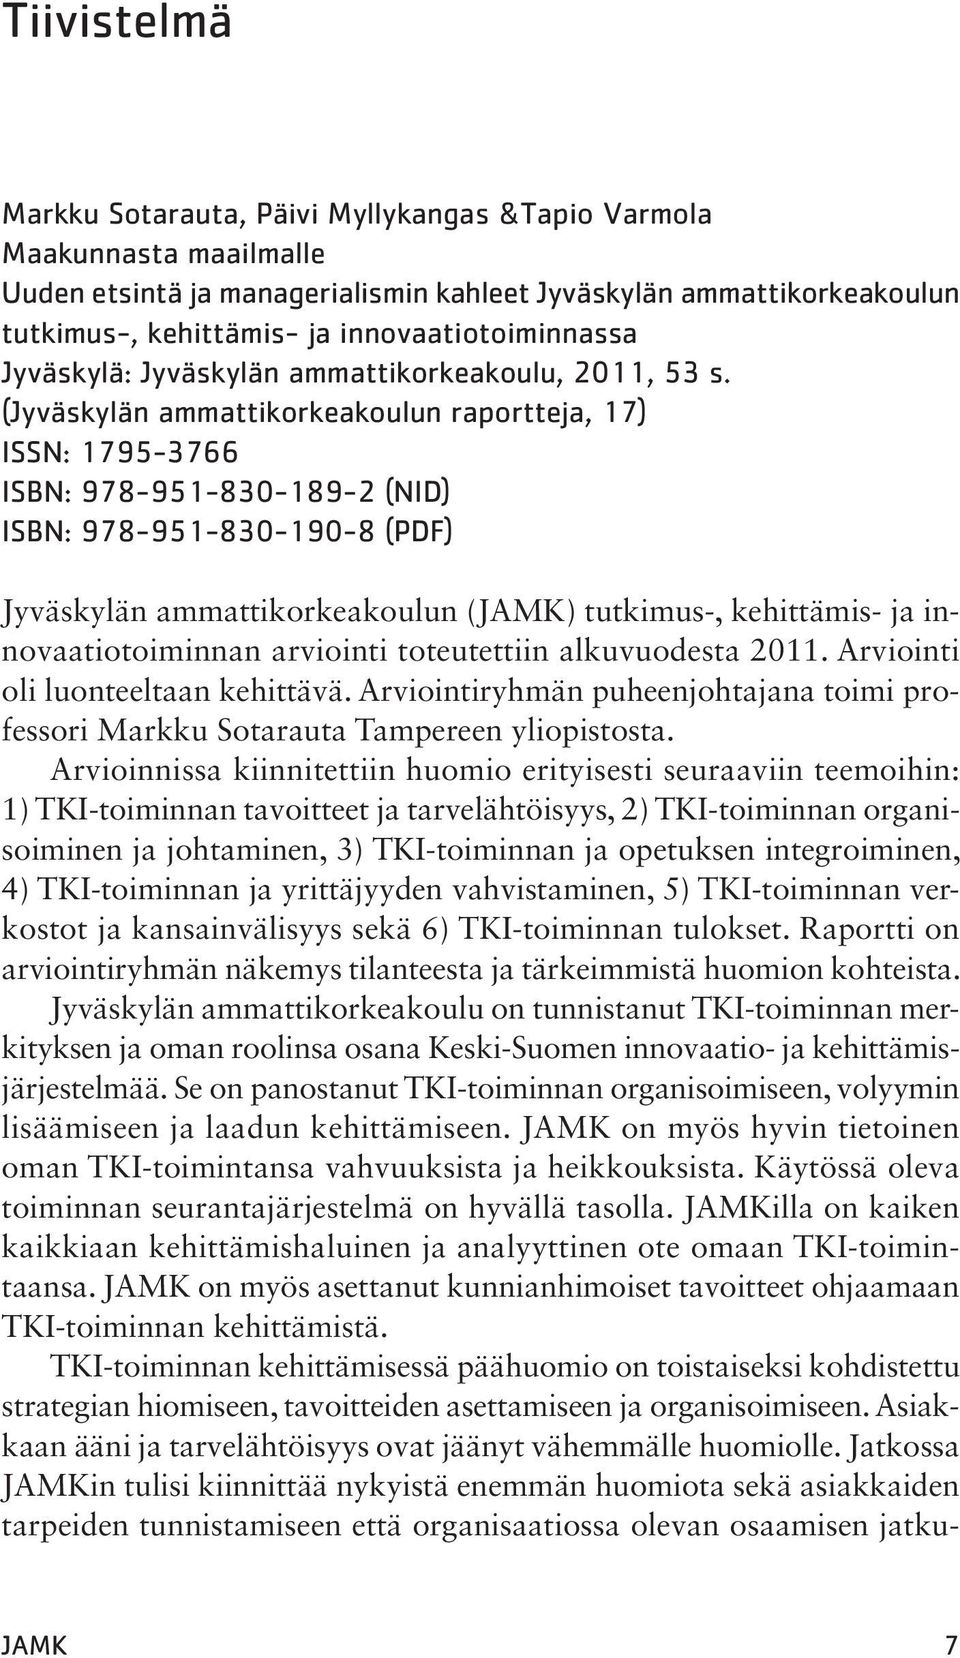 (Jyväskylän ammattikorkeakoulun raportteja, 17) ISSN: 1795-3766 ISBN: 978-951-830-189-2 (NID) ISBN: 978-951-830-190-8 (PDF) Jyväskylän ammattikorkeakoulun (JAMK) tutkimus-, kehittämis- ja